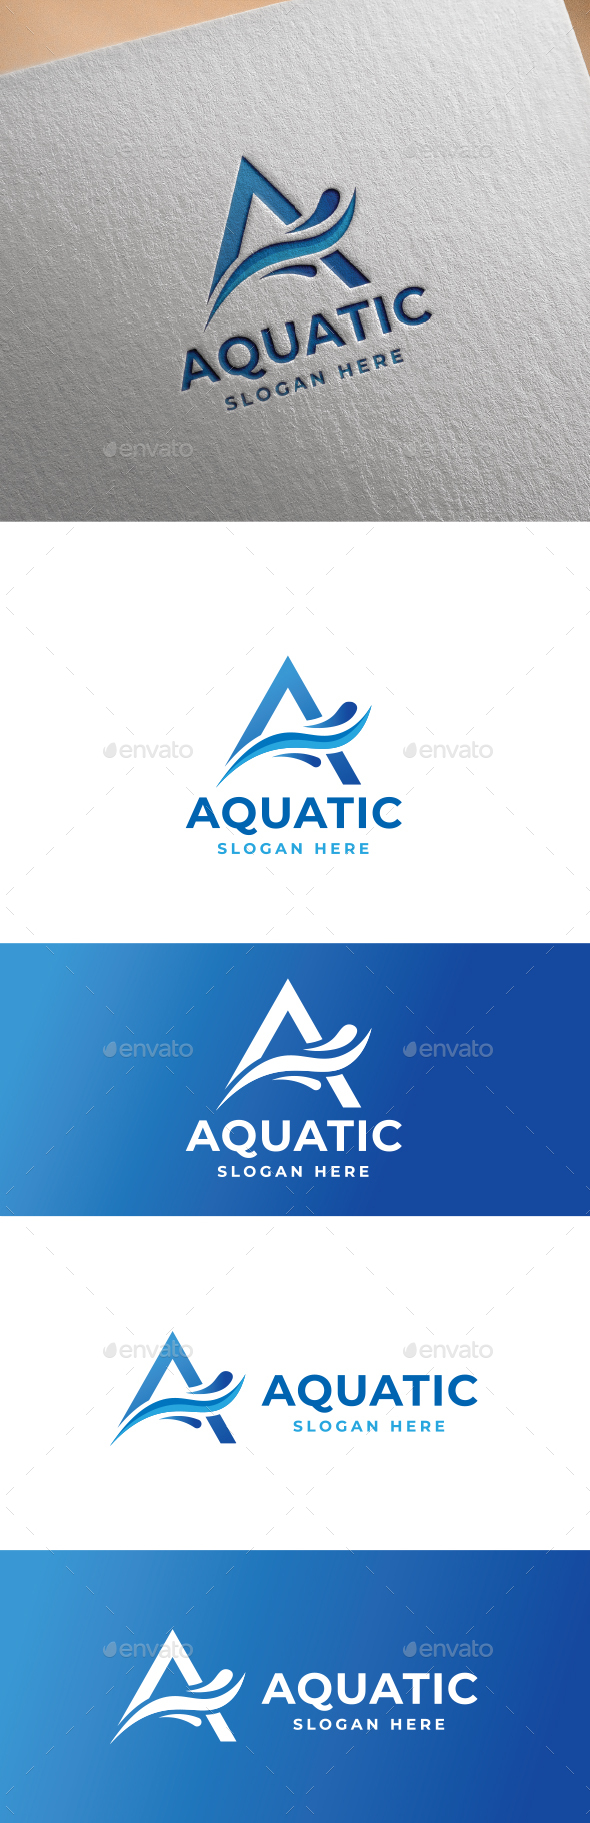 A-logo | Aquatic logo